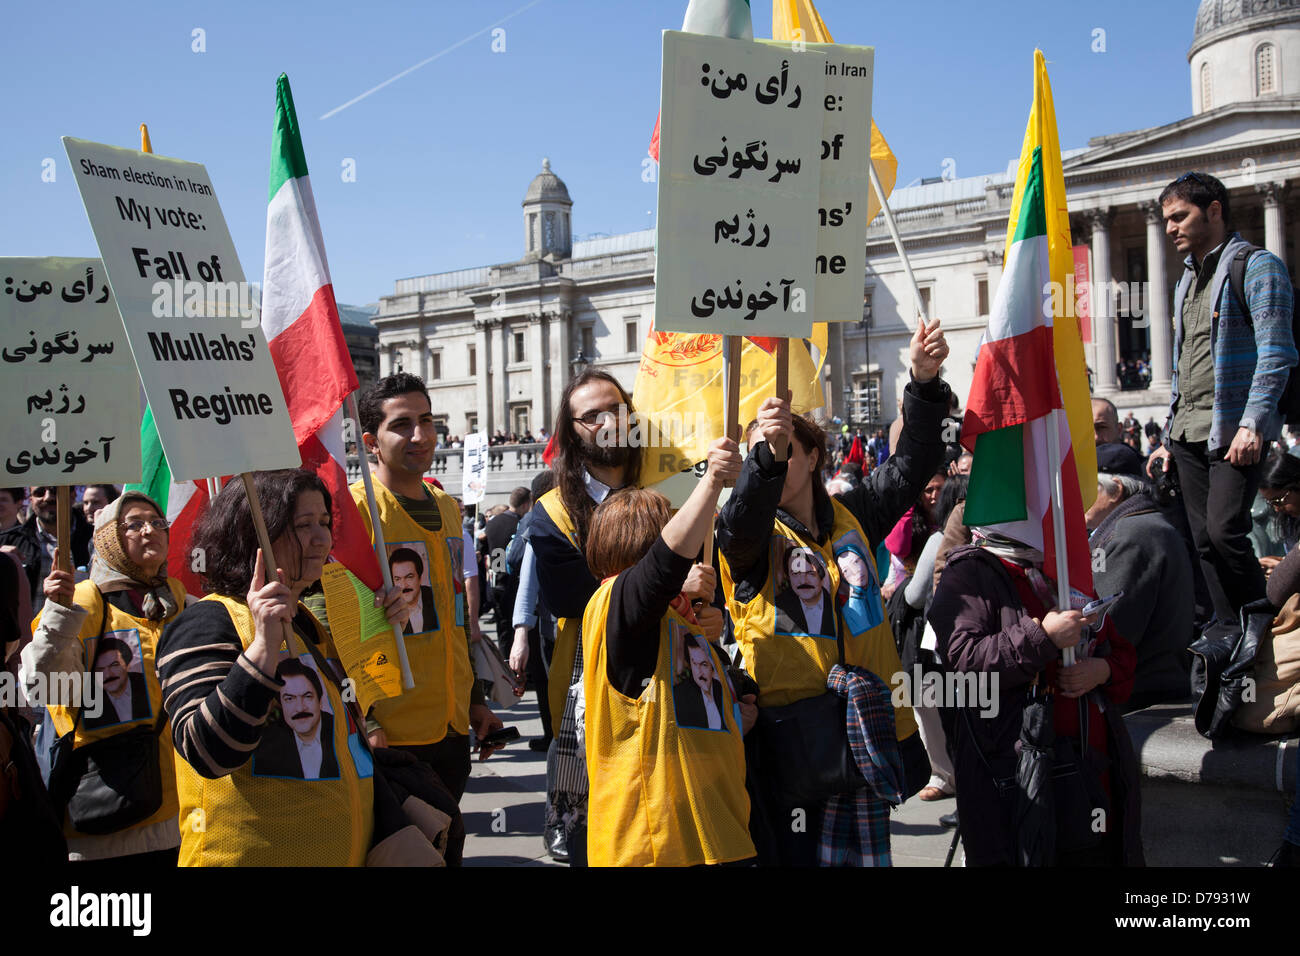 Giorno di maggio Rally - manifestanti iraniani, Sham elezione! Il mio voto : Caduta del Mullah al regime - 1 Maggio 2013 - London REGNO UNITO Foto Stock